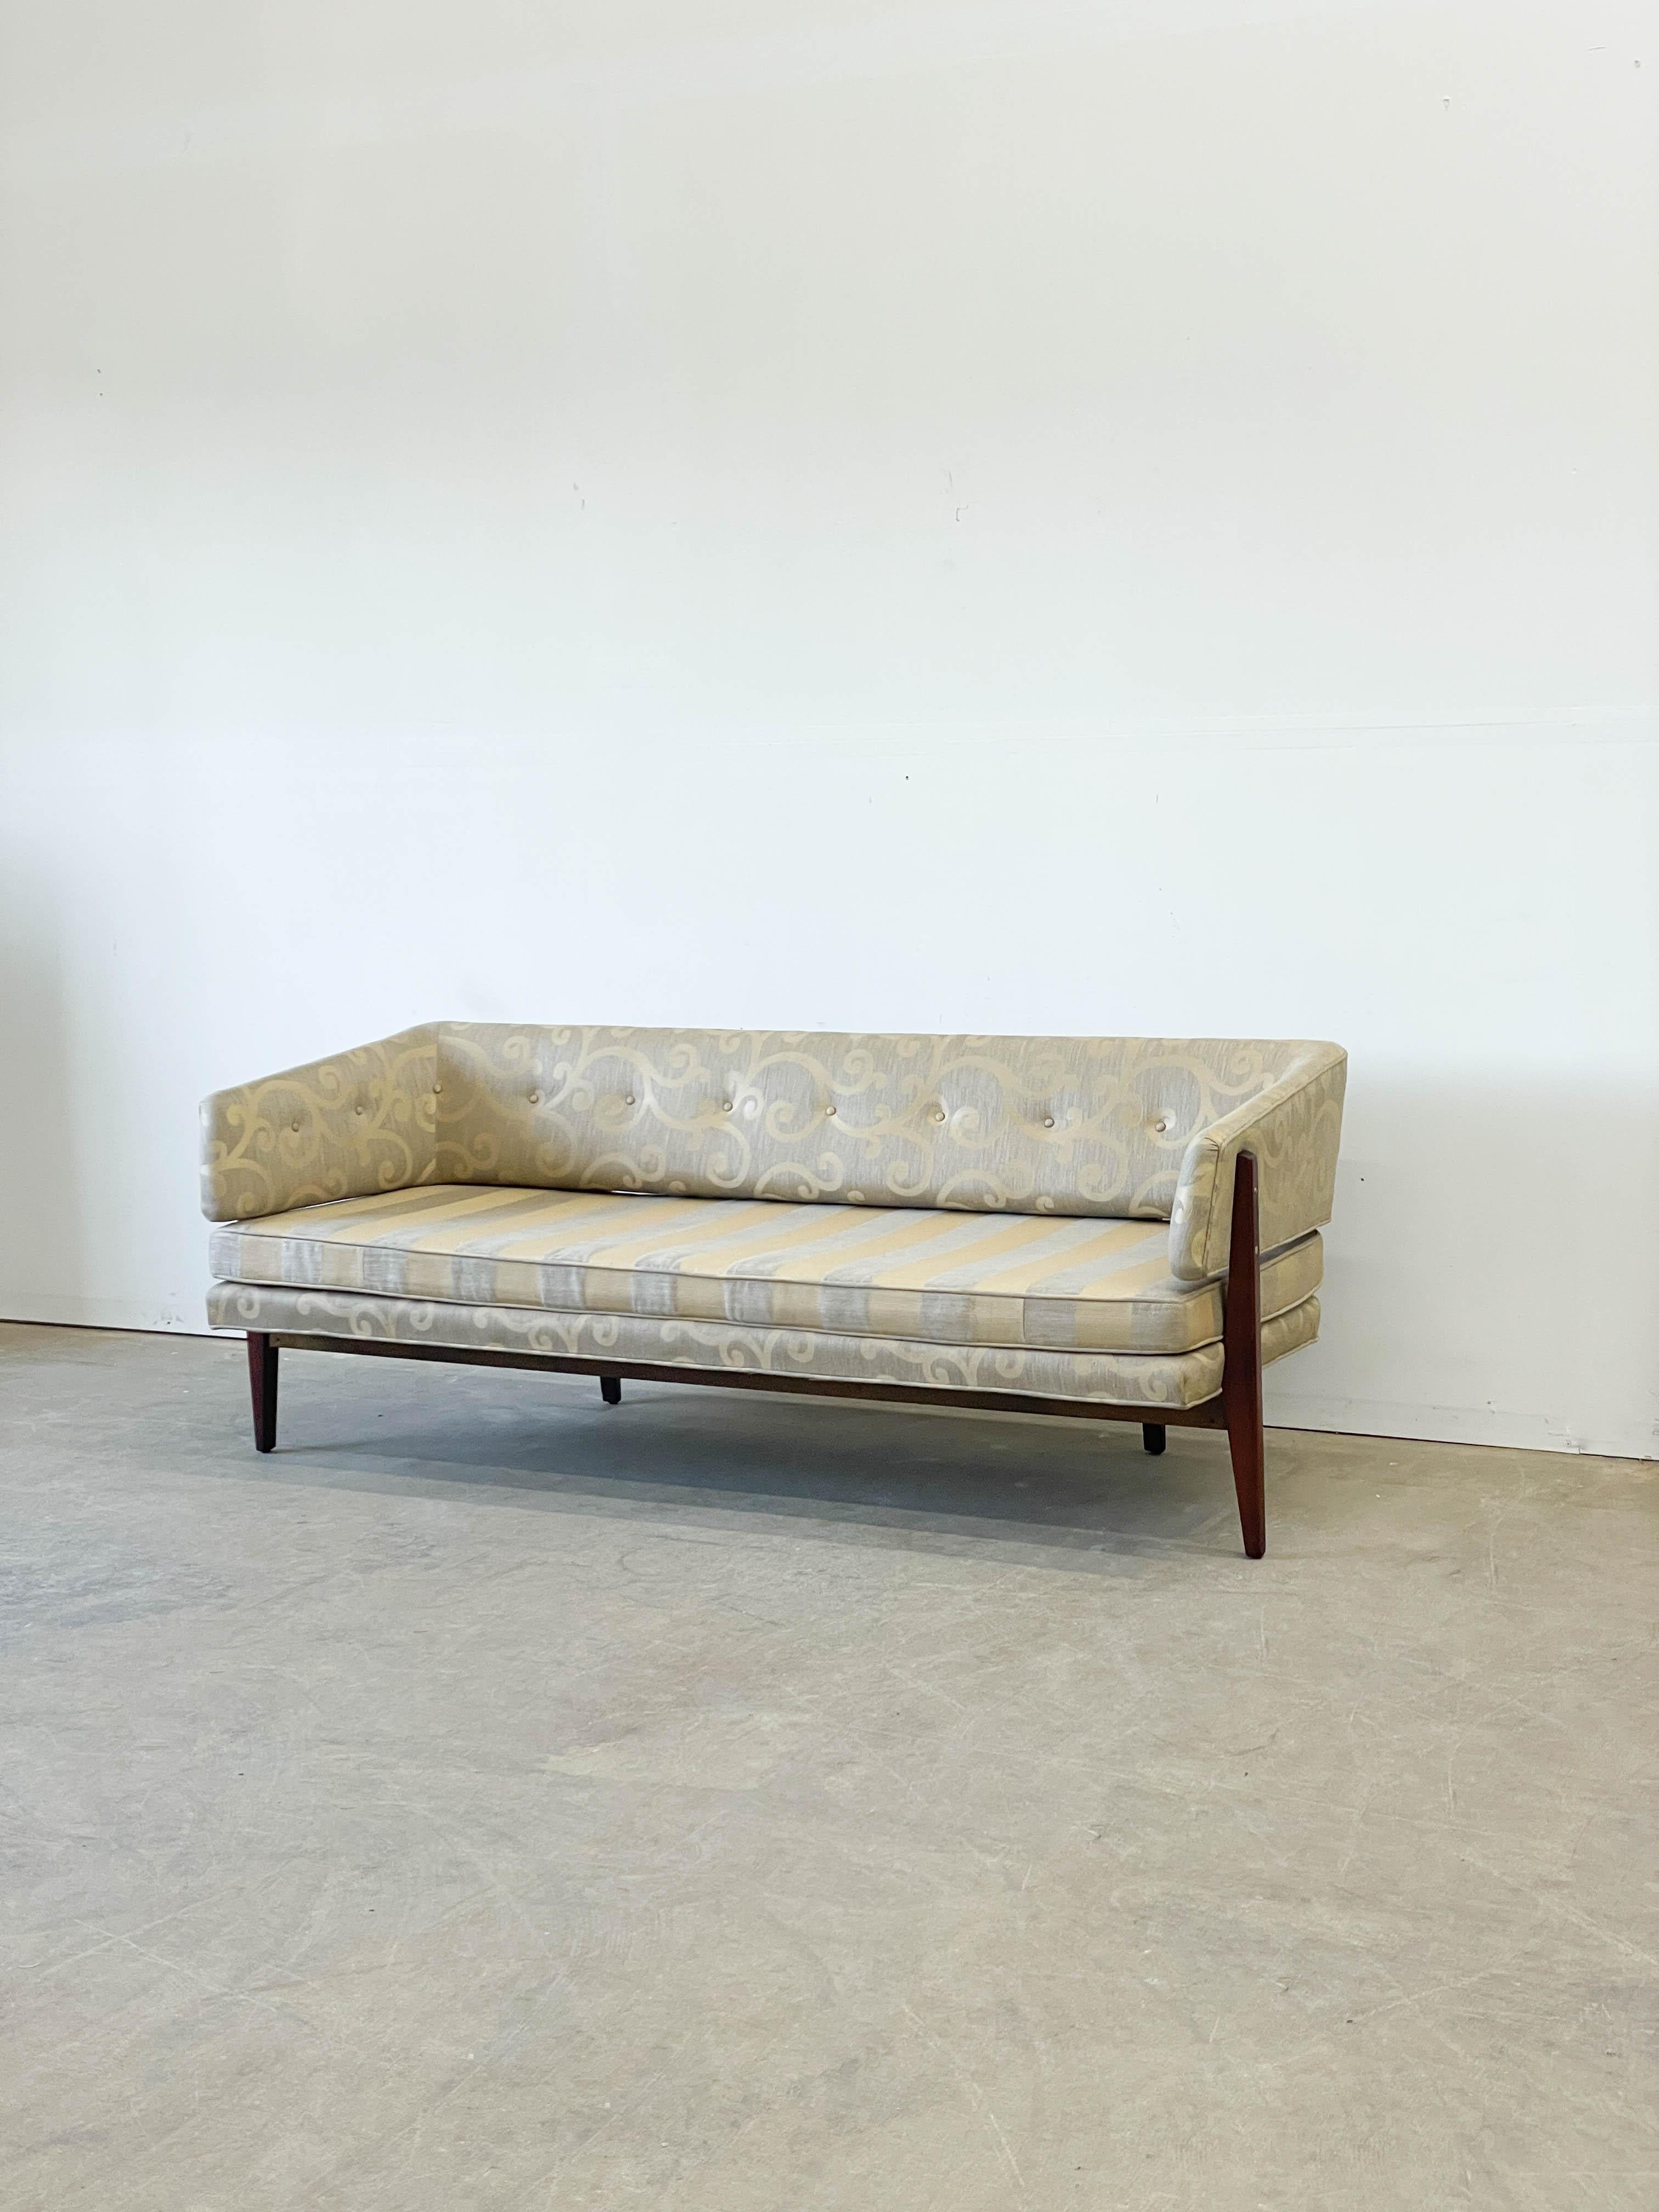 Seltenes Sofadesign aus den 1950er Jahren von Edward Wormley für Dunbar mit einem schönen, freiliegenden Mahagonirahmen und einem schwebenden Arm- und Rückenteil. Dieses Sofa ist ein echter Hingucker und zeigt, wie geschickt Wormley traditionelle